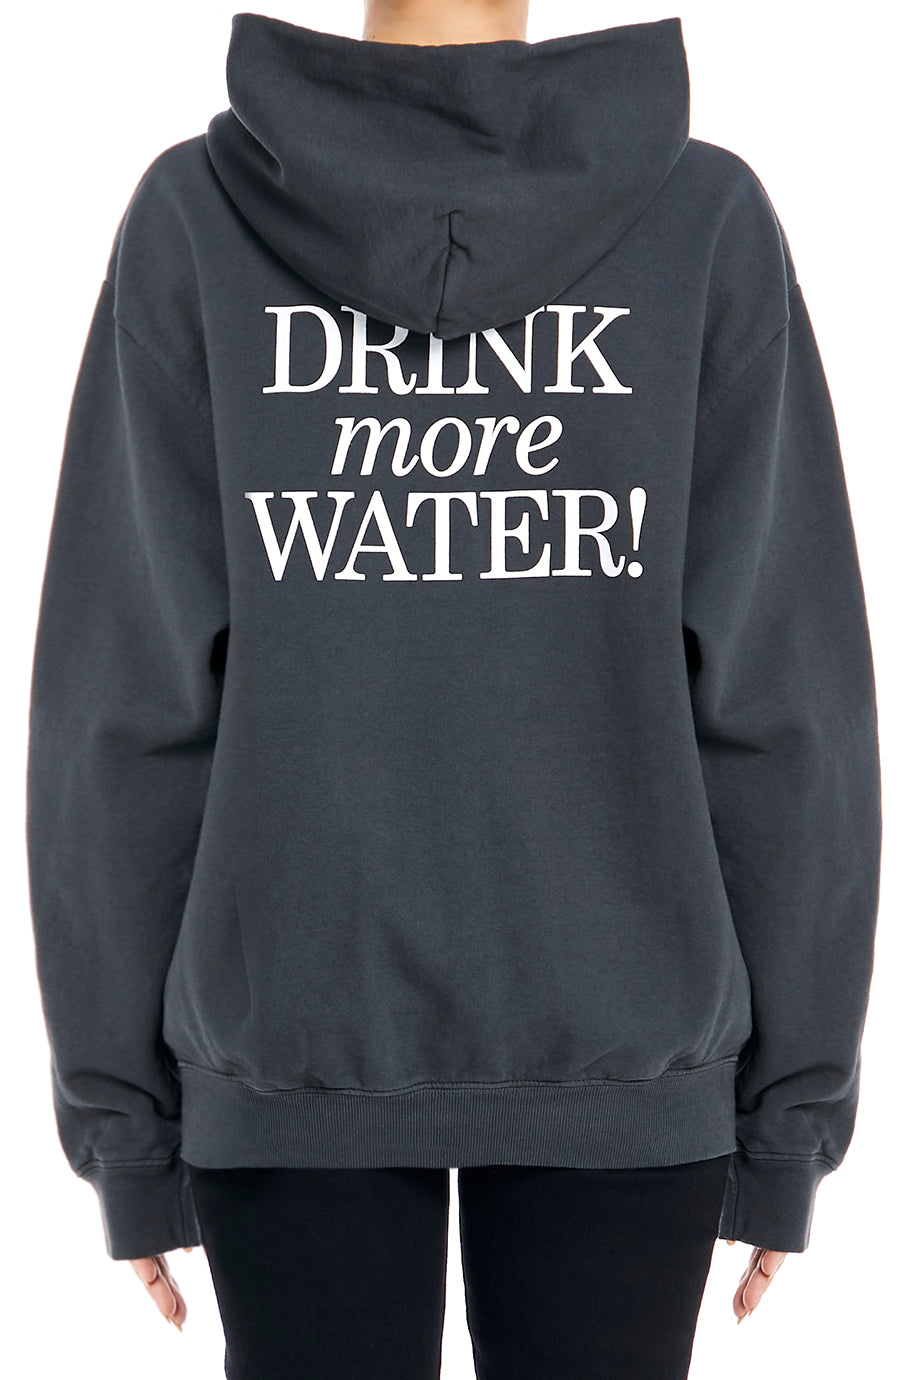 New Drink More Water Hoodie